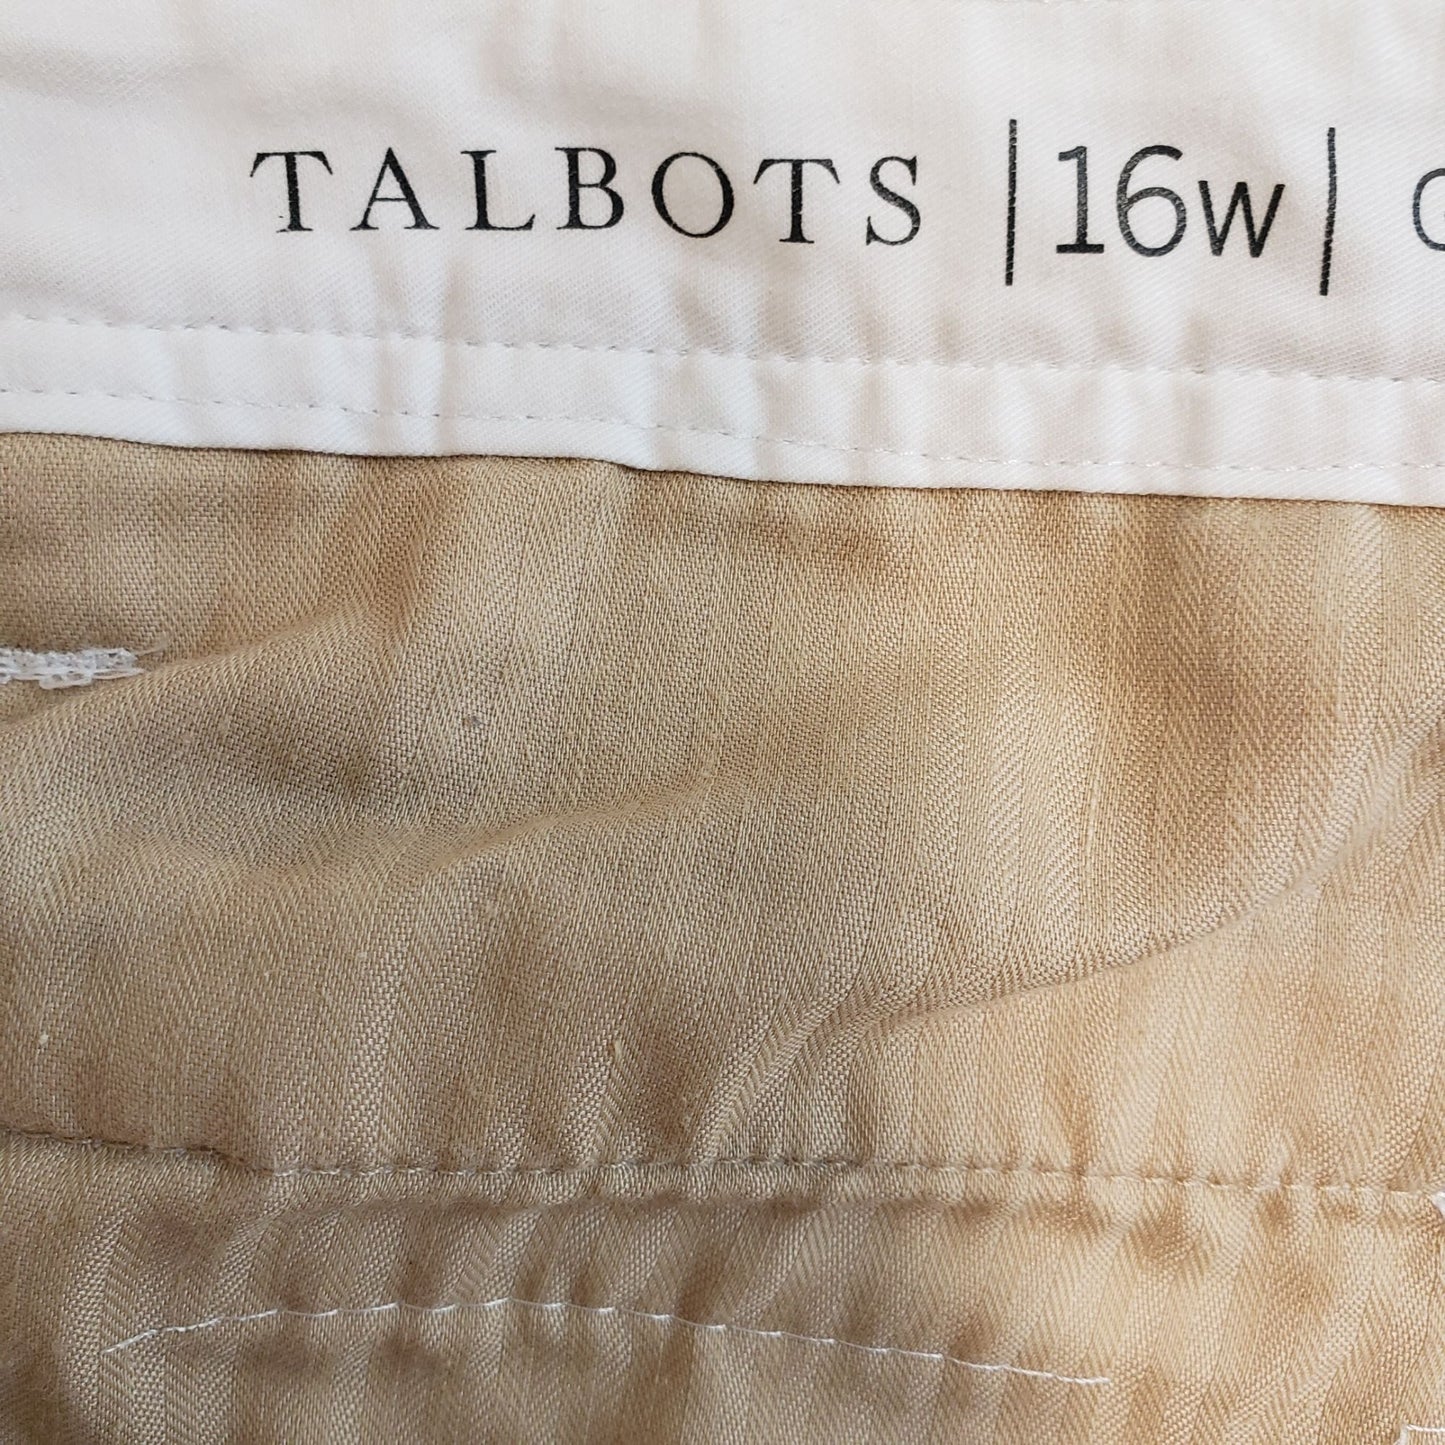 Talbots Pineapple Print Girlfriend Chino Pants Size 16W